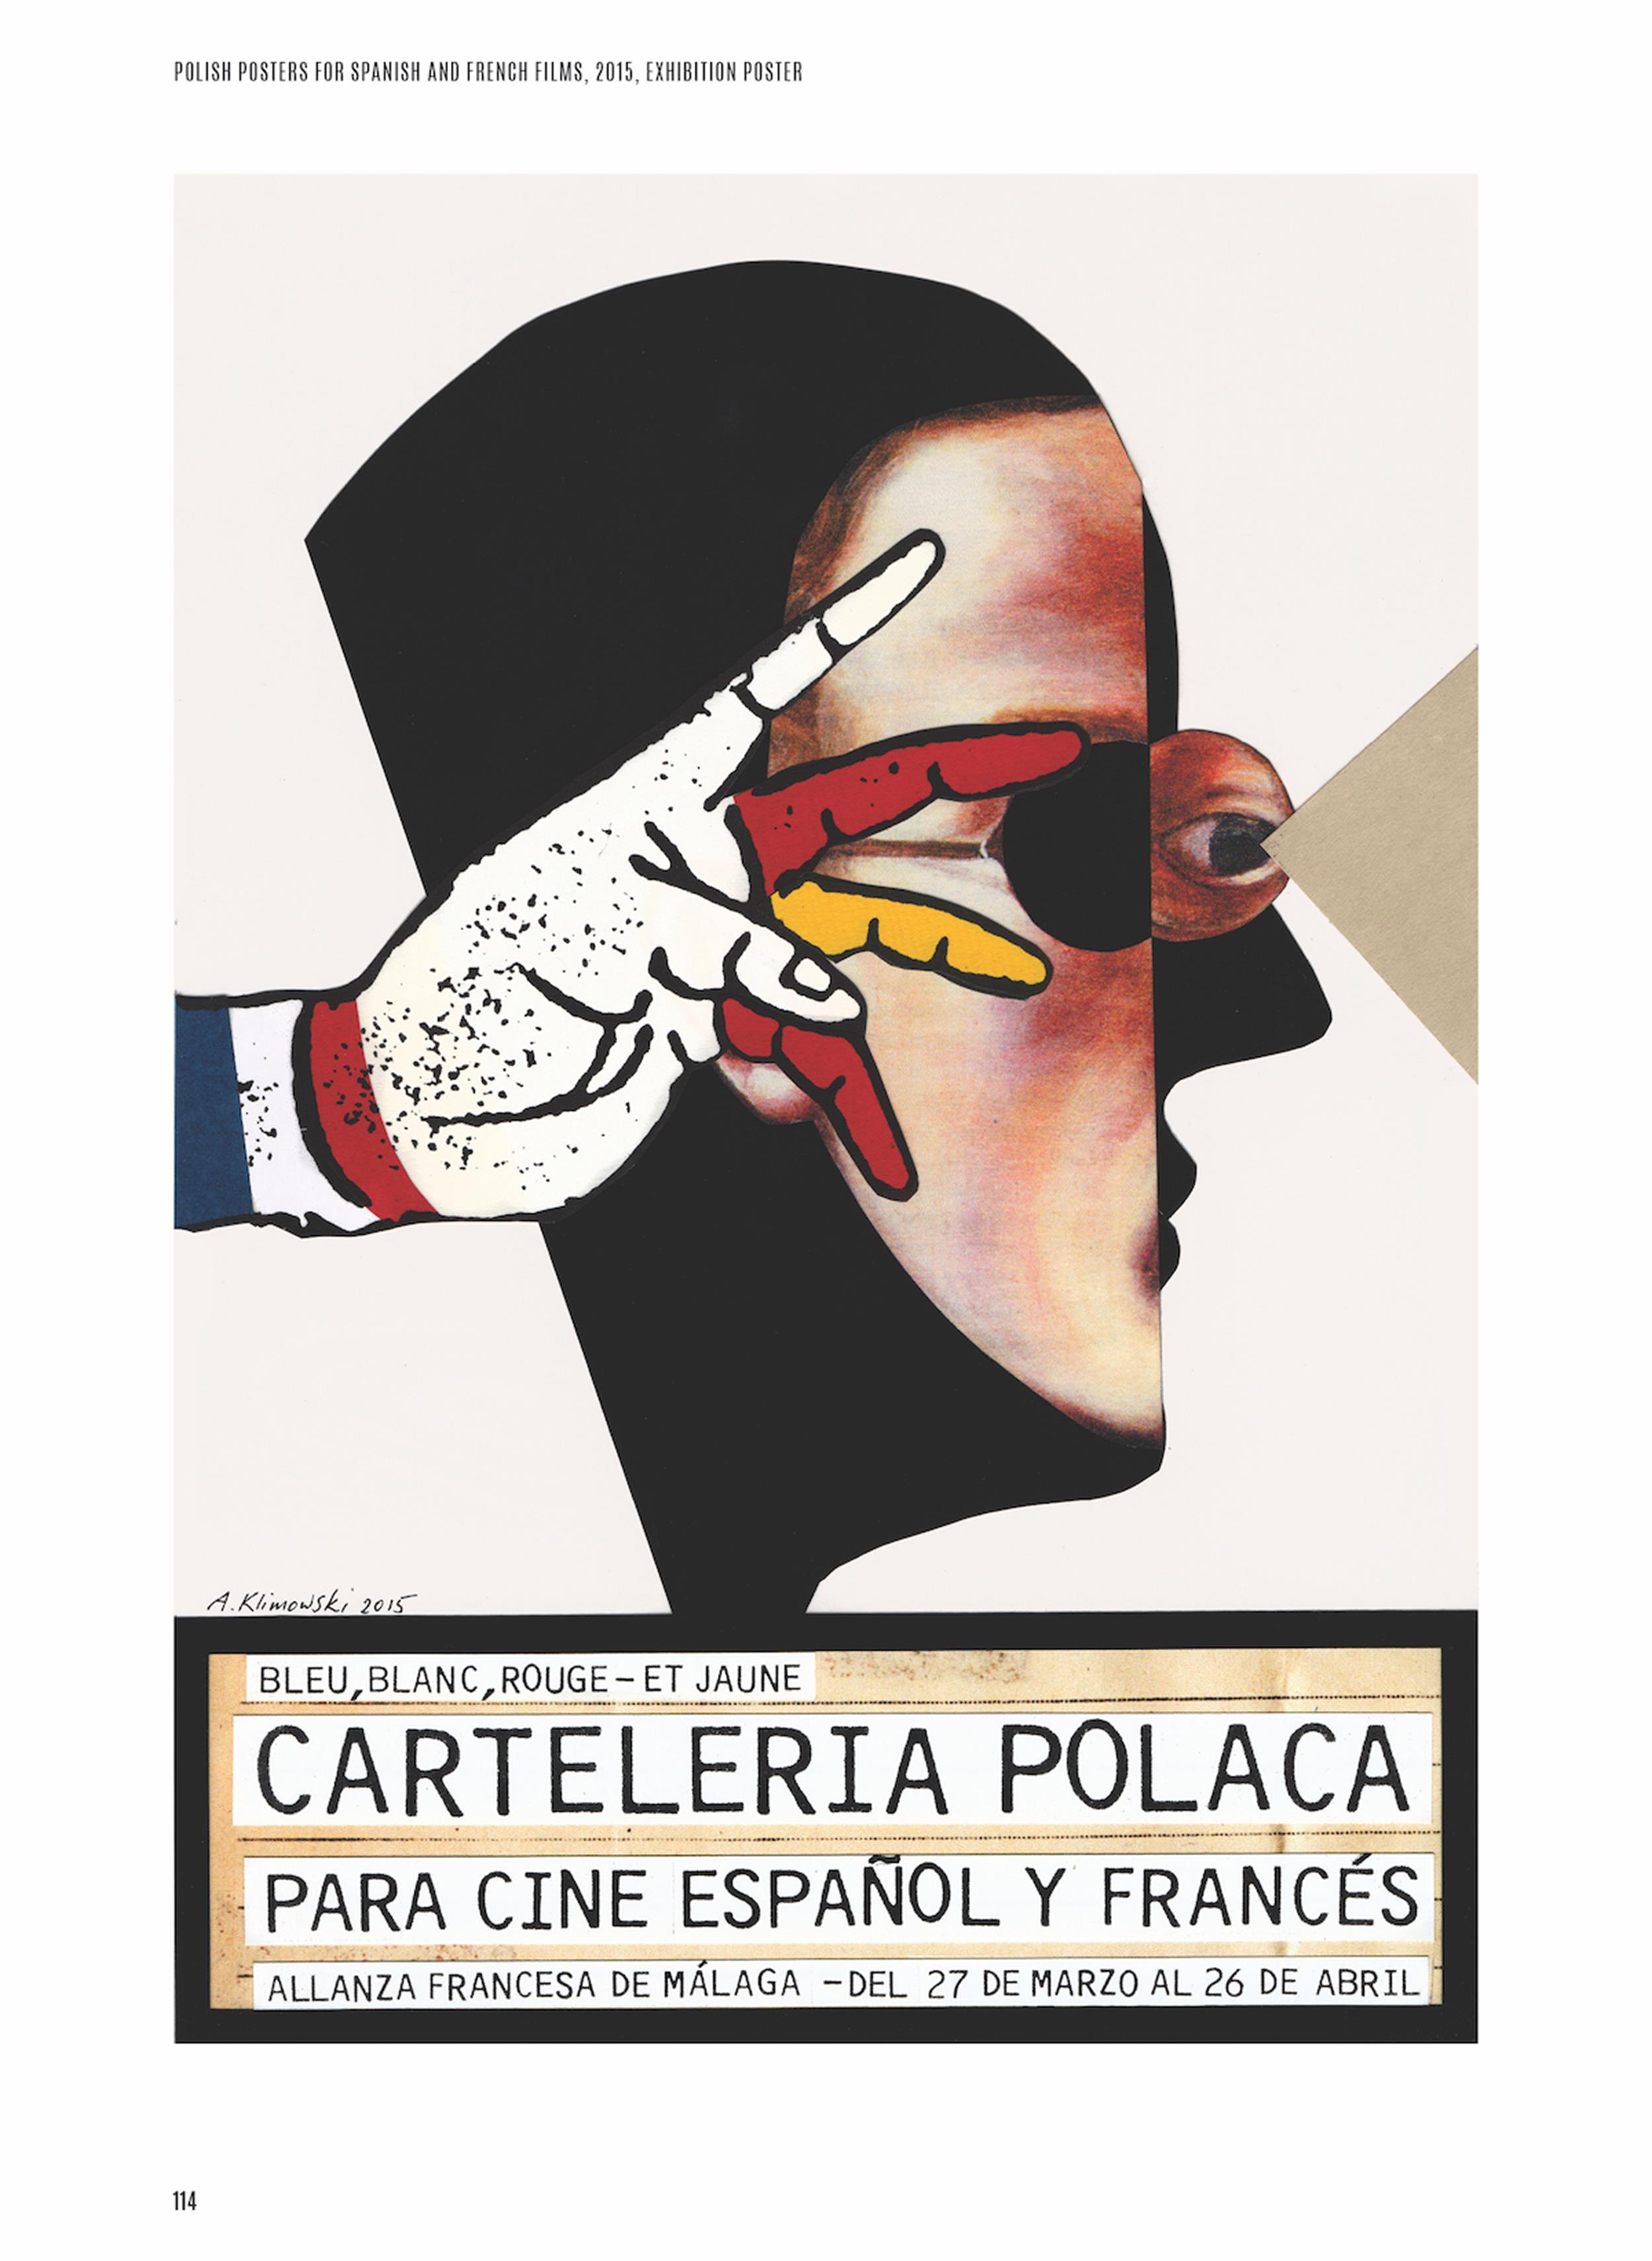 Andrzej Klimowski, plakat wystawy polskich plakatów do filmów hiszpańskich i francuskich, Malaga, 2015